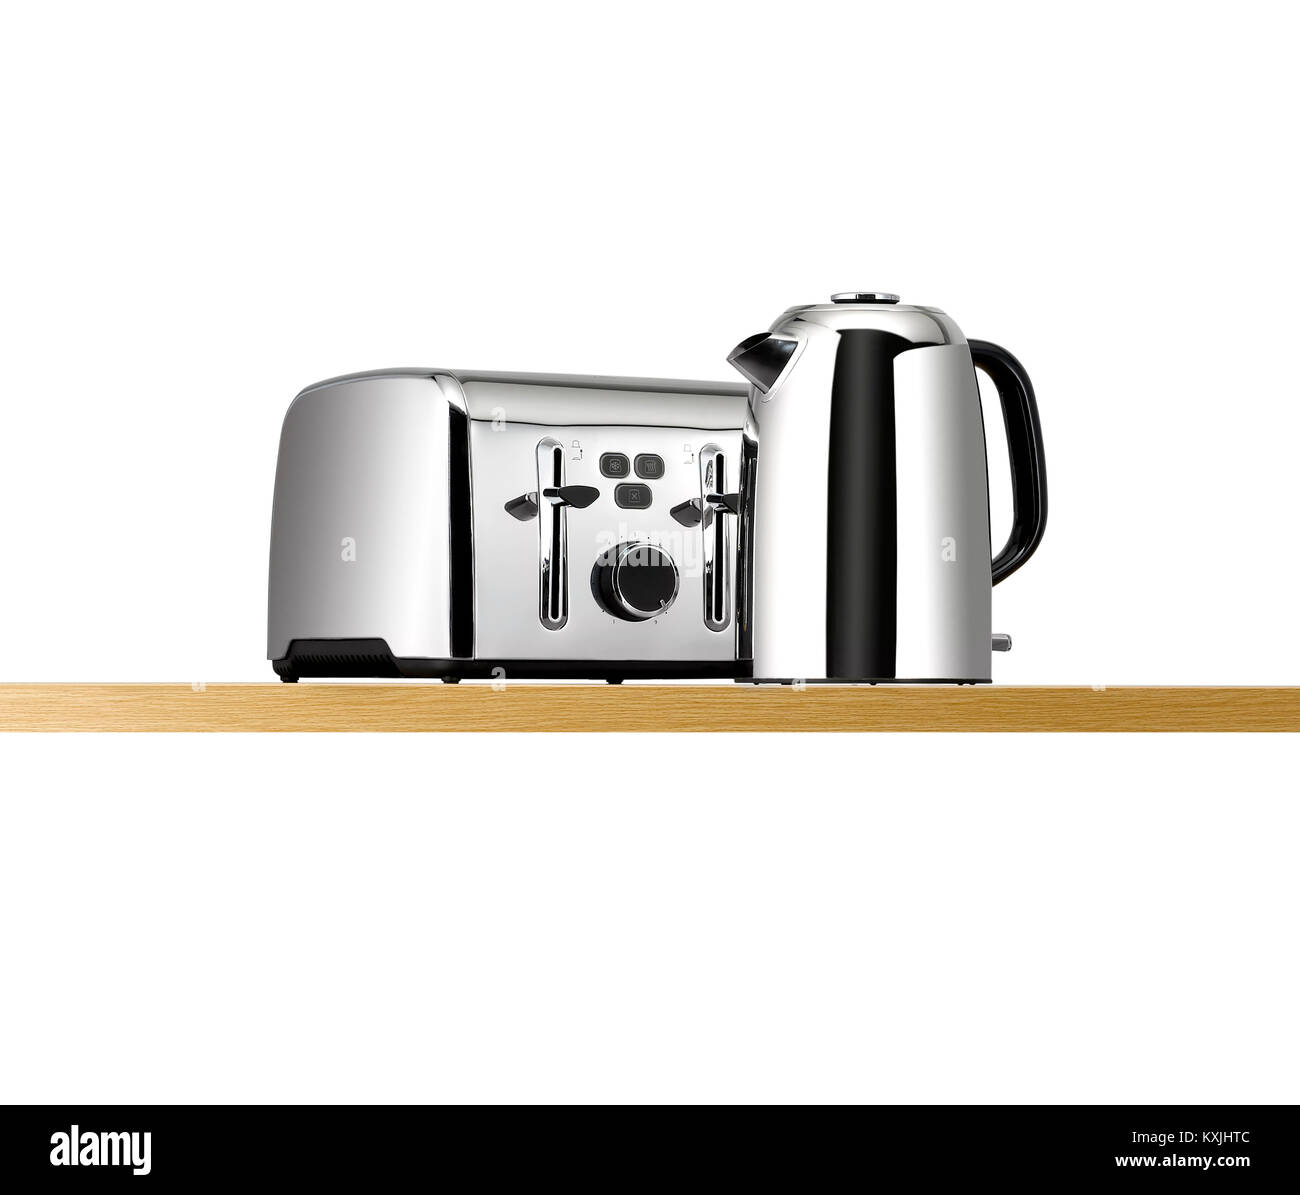 Einen Wasserkocher und Toaster auf eine Küche aus Holz Regal  Stockfotografie - Alamy